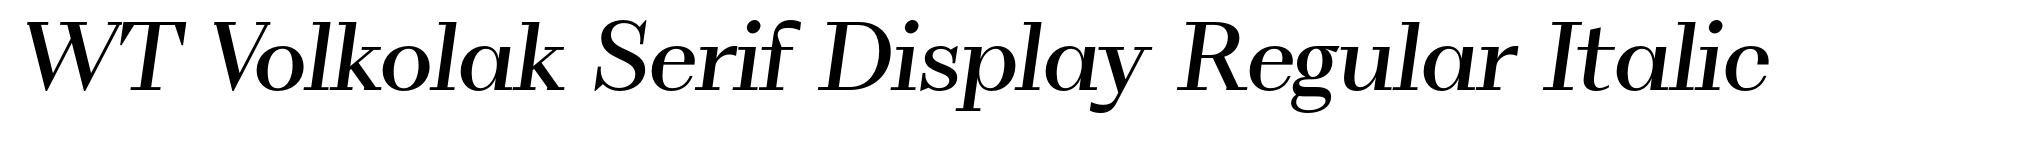 WT Volkolak Serif Display Regular Italic image